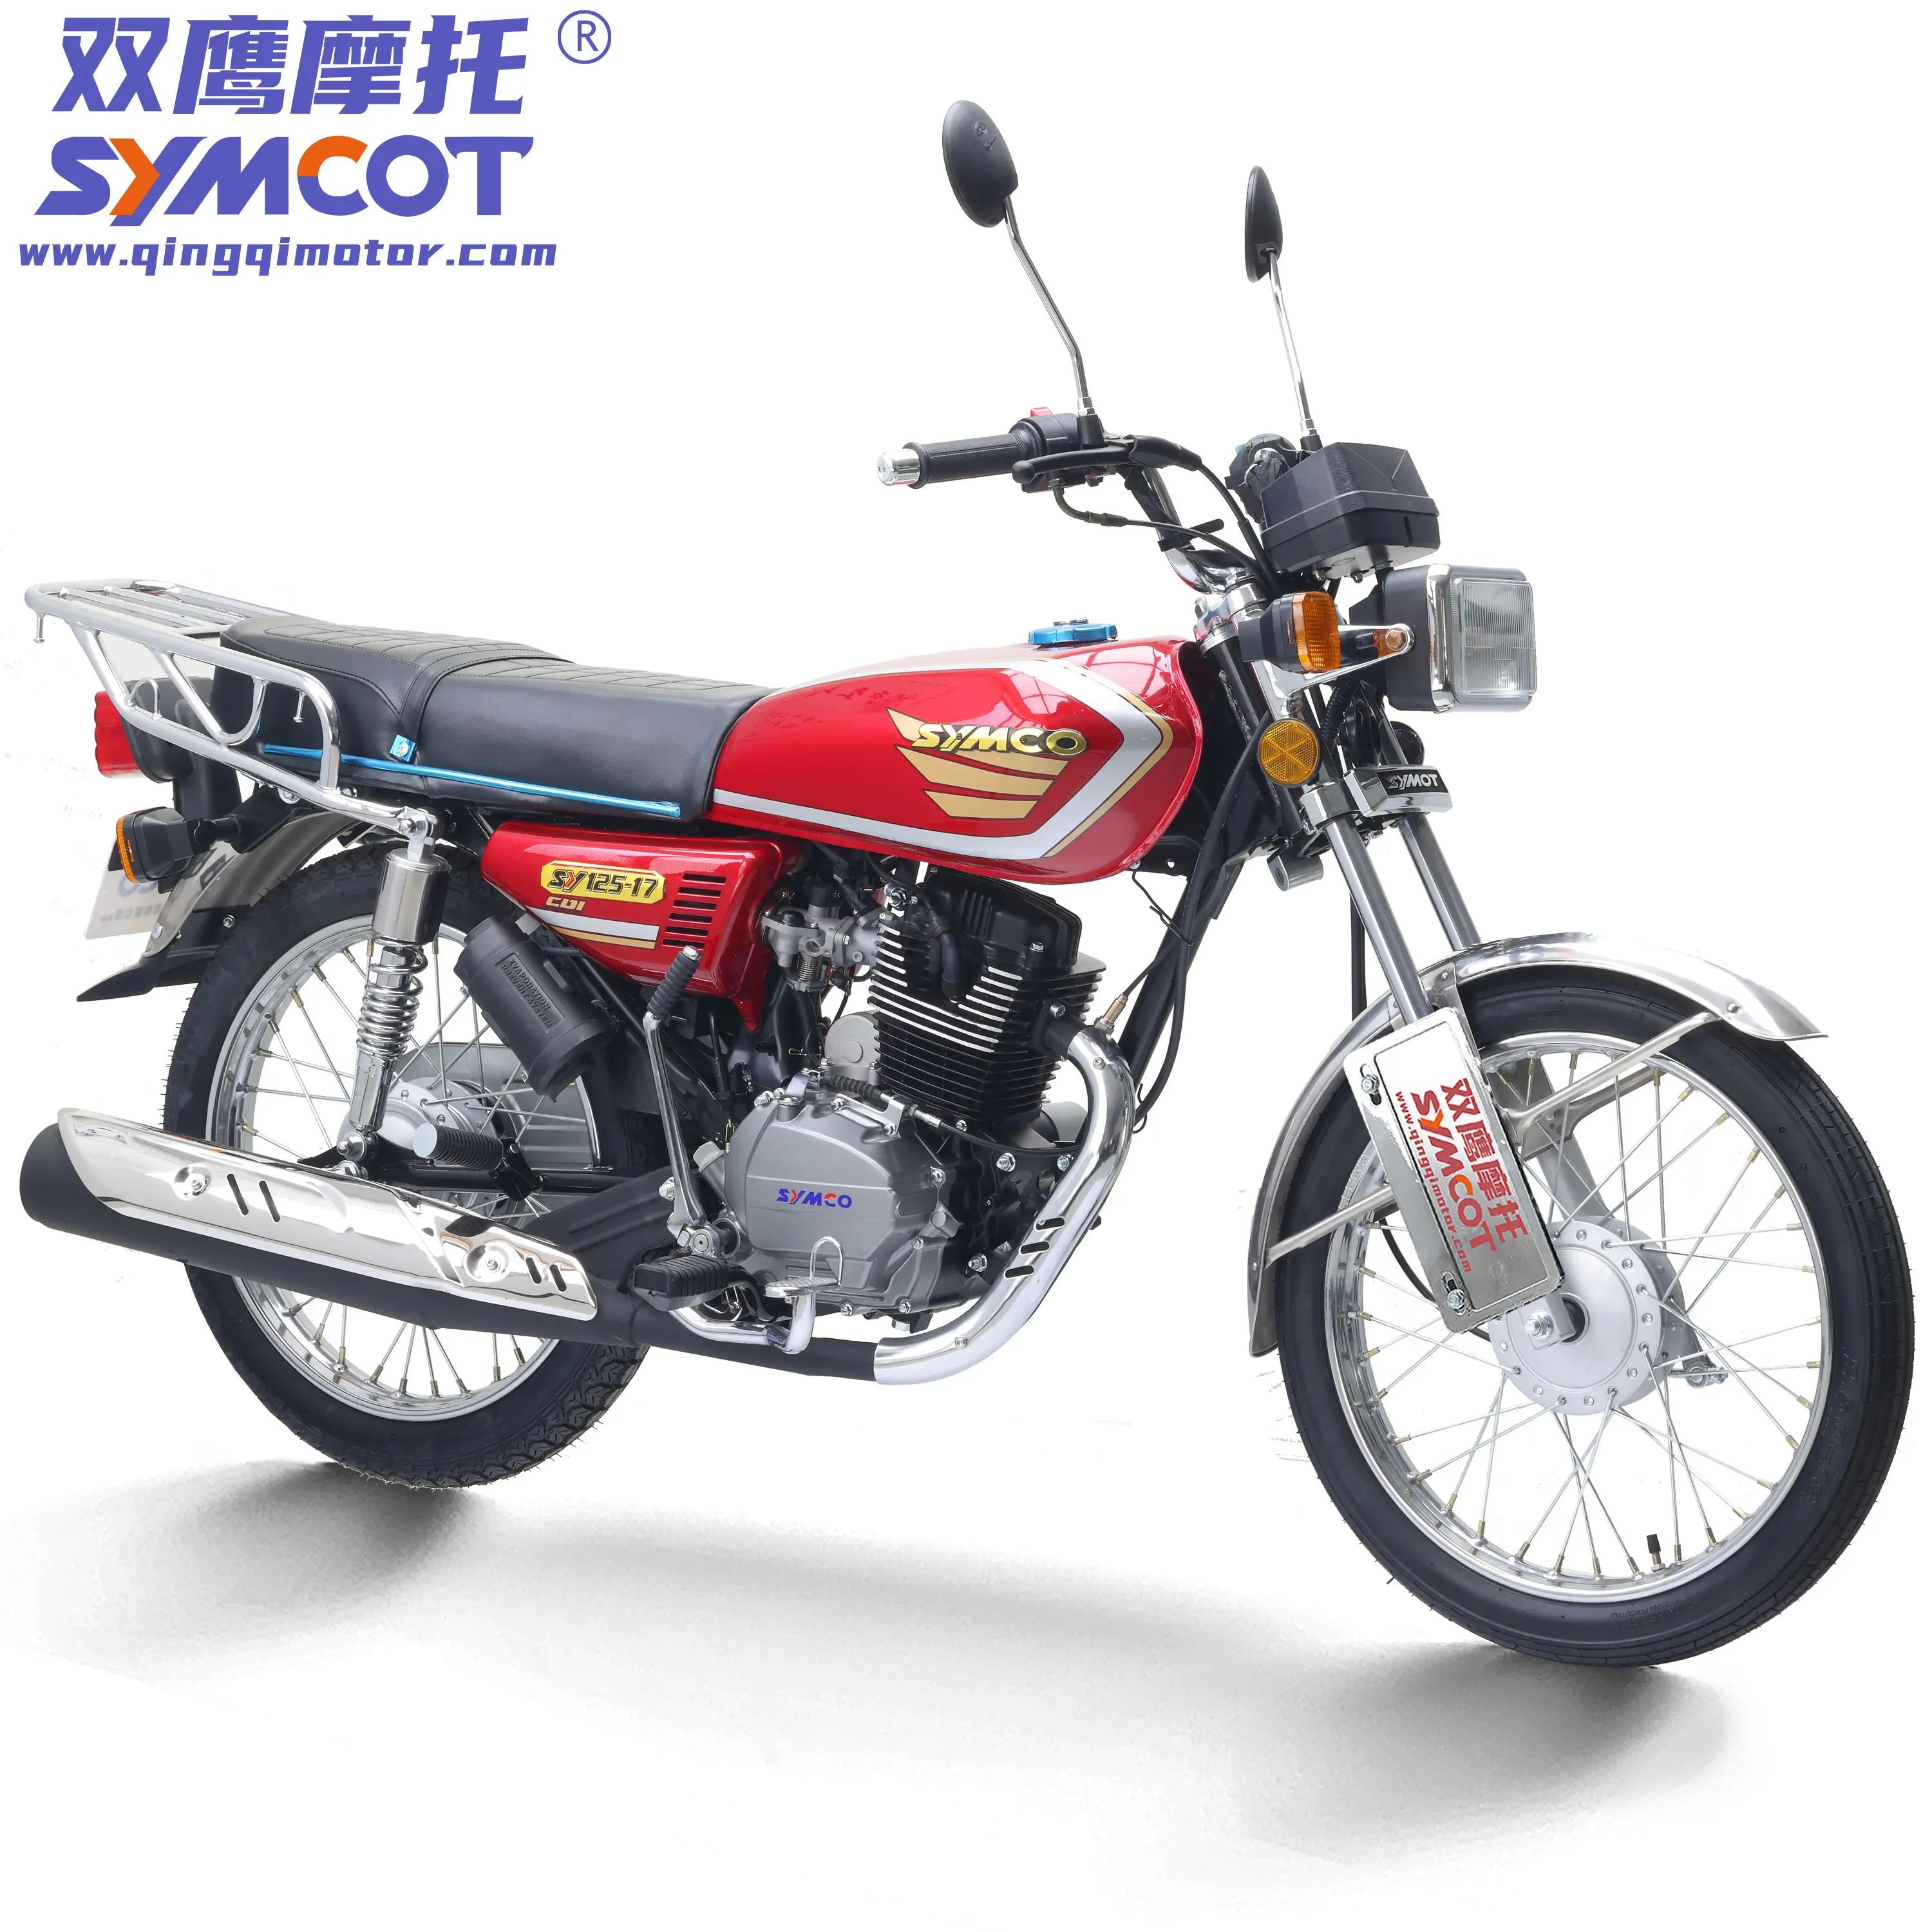 Goedkope China Motorfiets CG125 CG150 CG175 Zuinig Straat Motorfiets Model Met Hoge Kwaliteit Afwerking Klaar Om